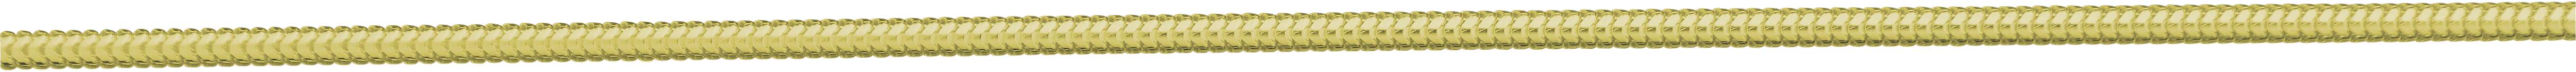 Schlangenkette Gold 750/-Gg Ø 1,60mm